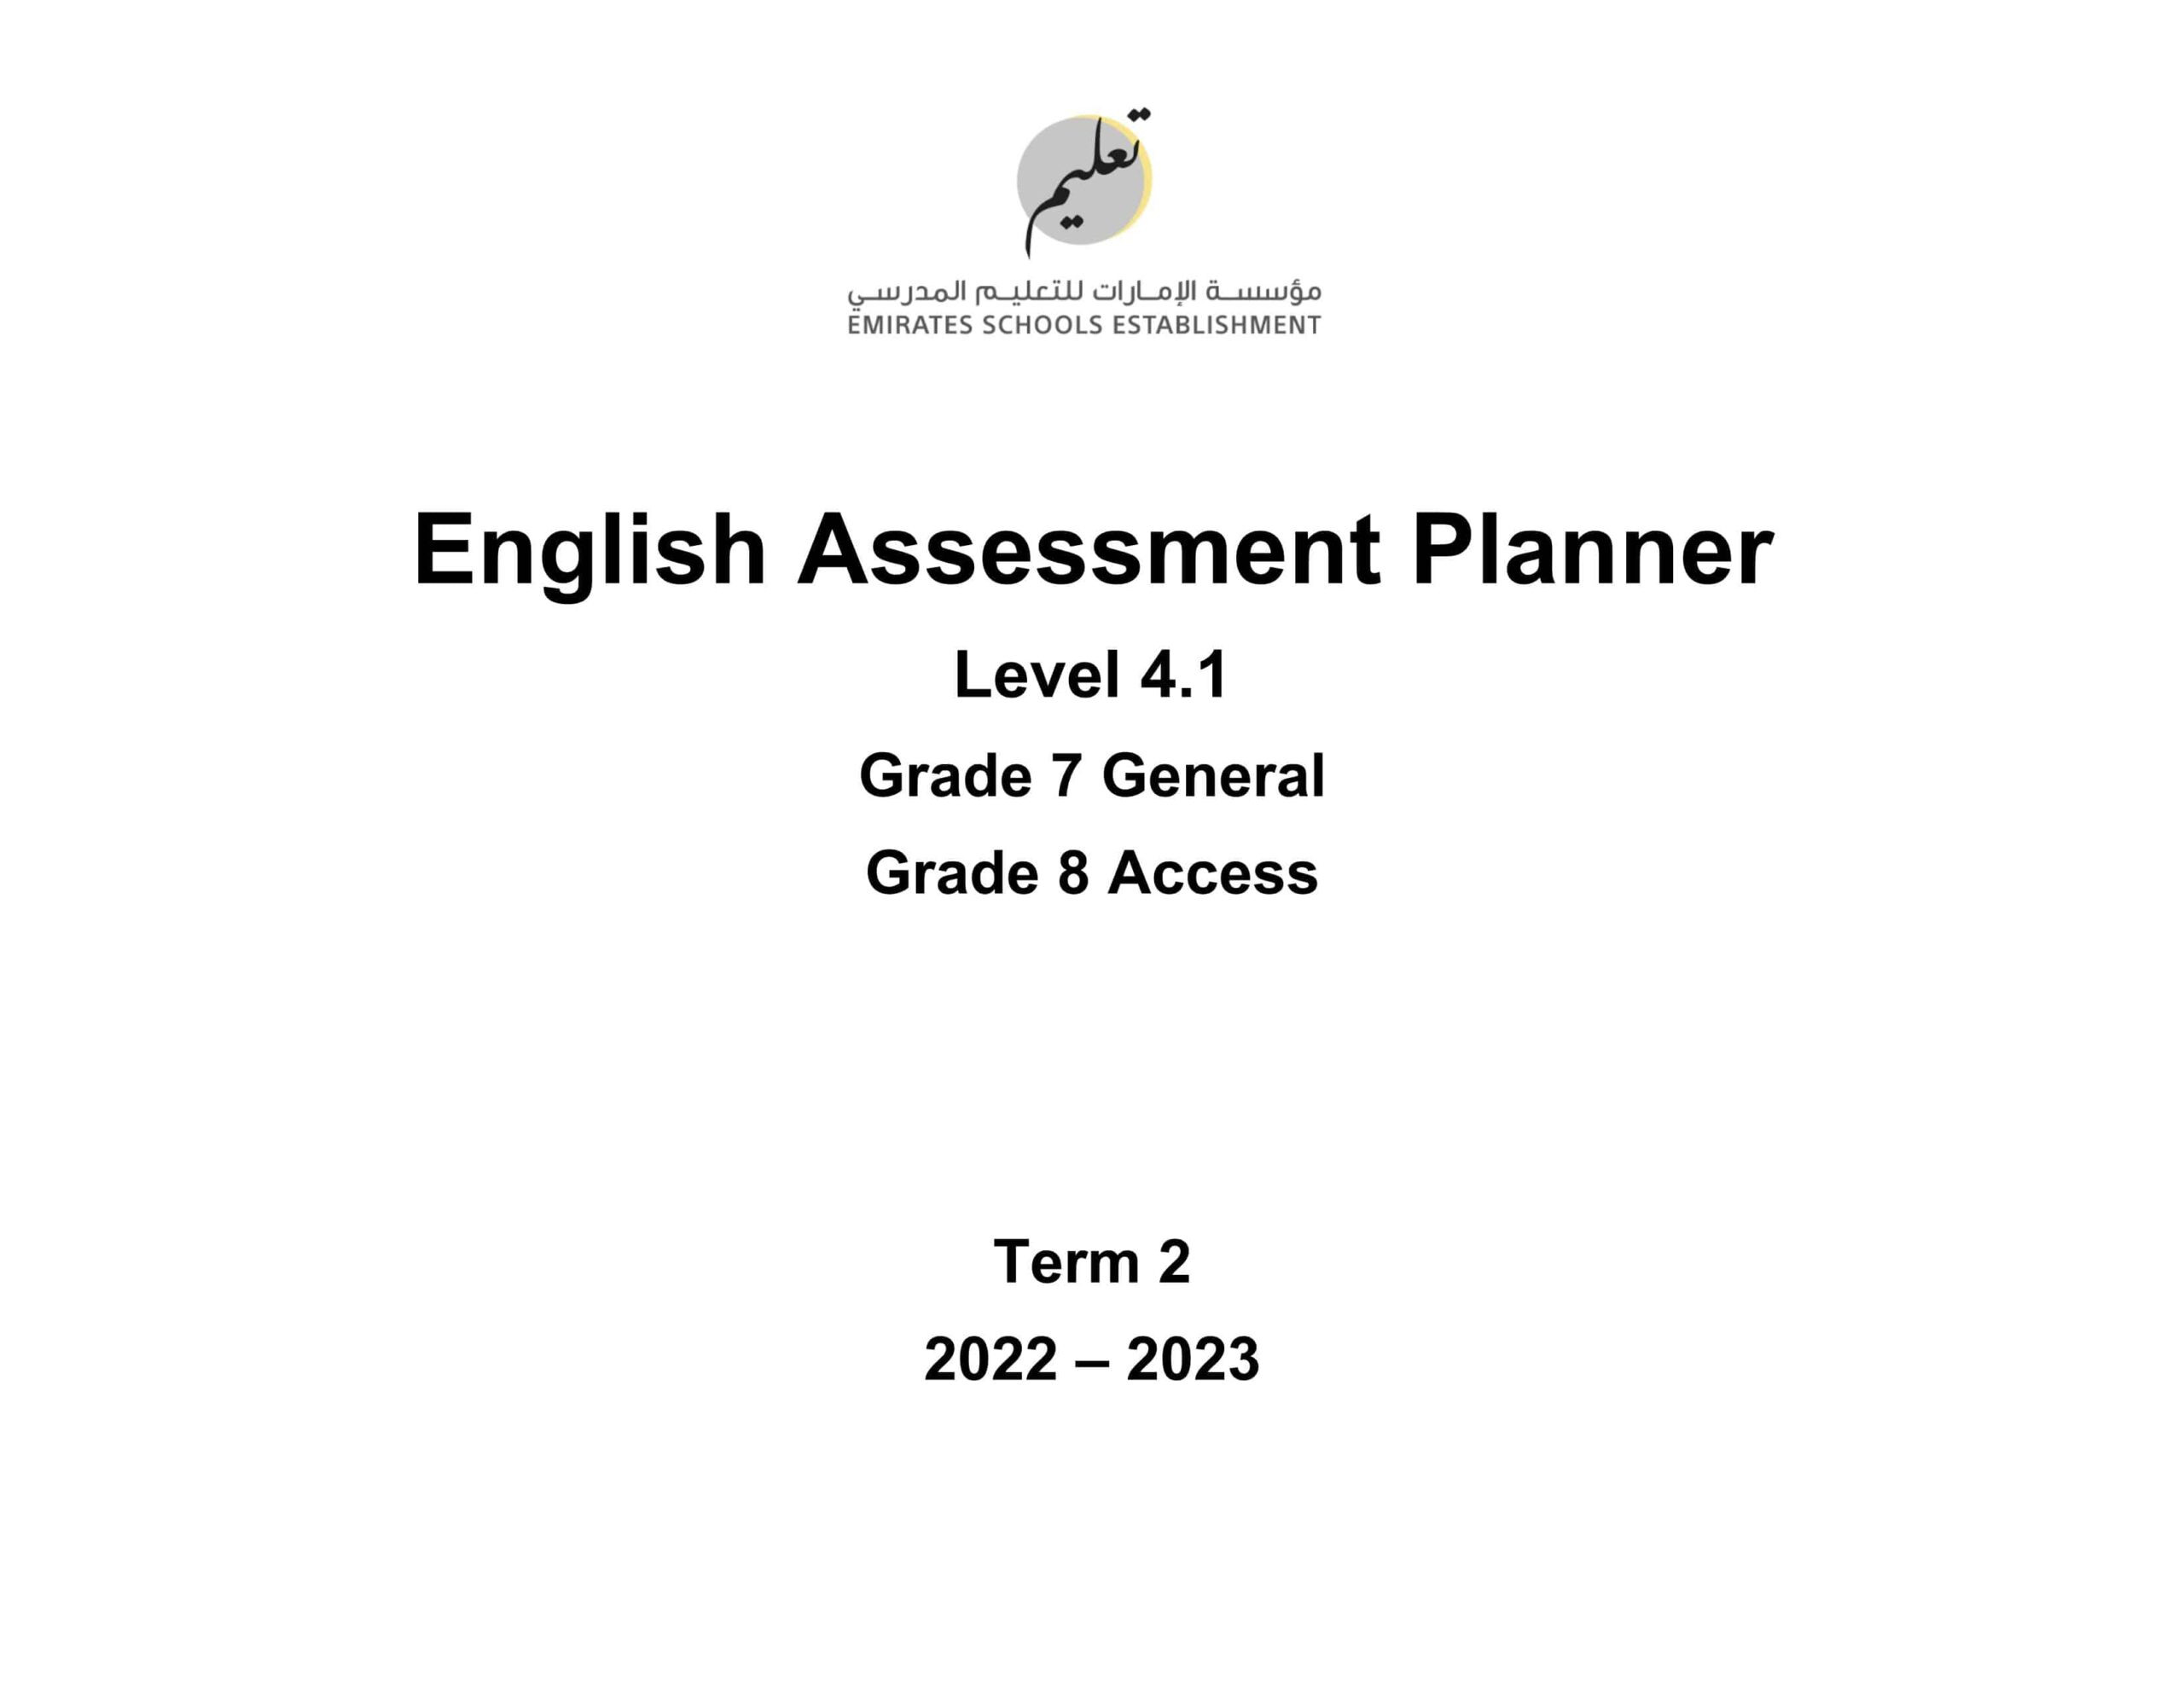 مواصفات الامتحان النهائي Level 4.1 اللغة الإنجليزية الصف السابع General والثامن Access الفصل الدراسي الثاني 2022-2023